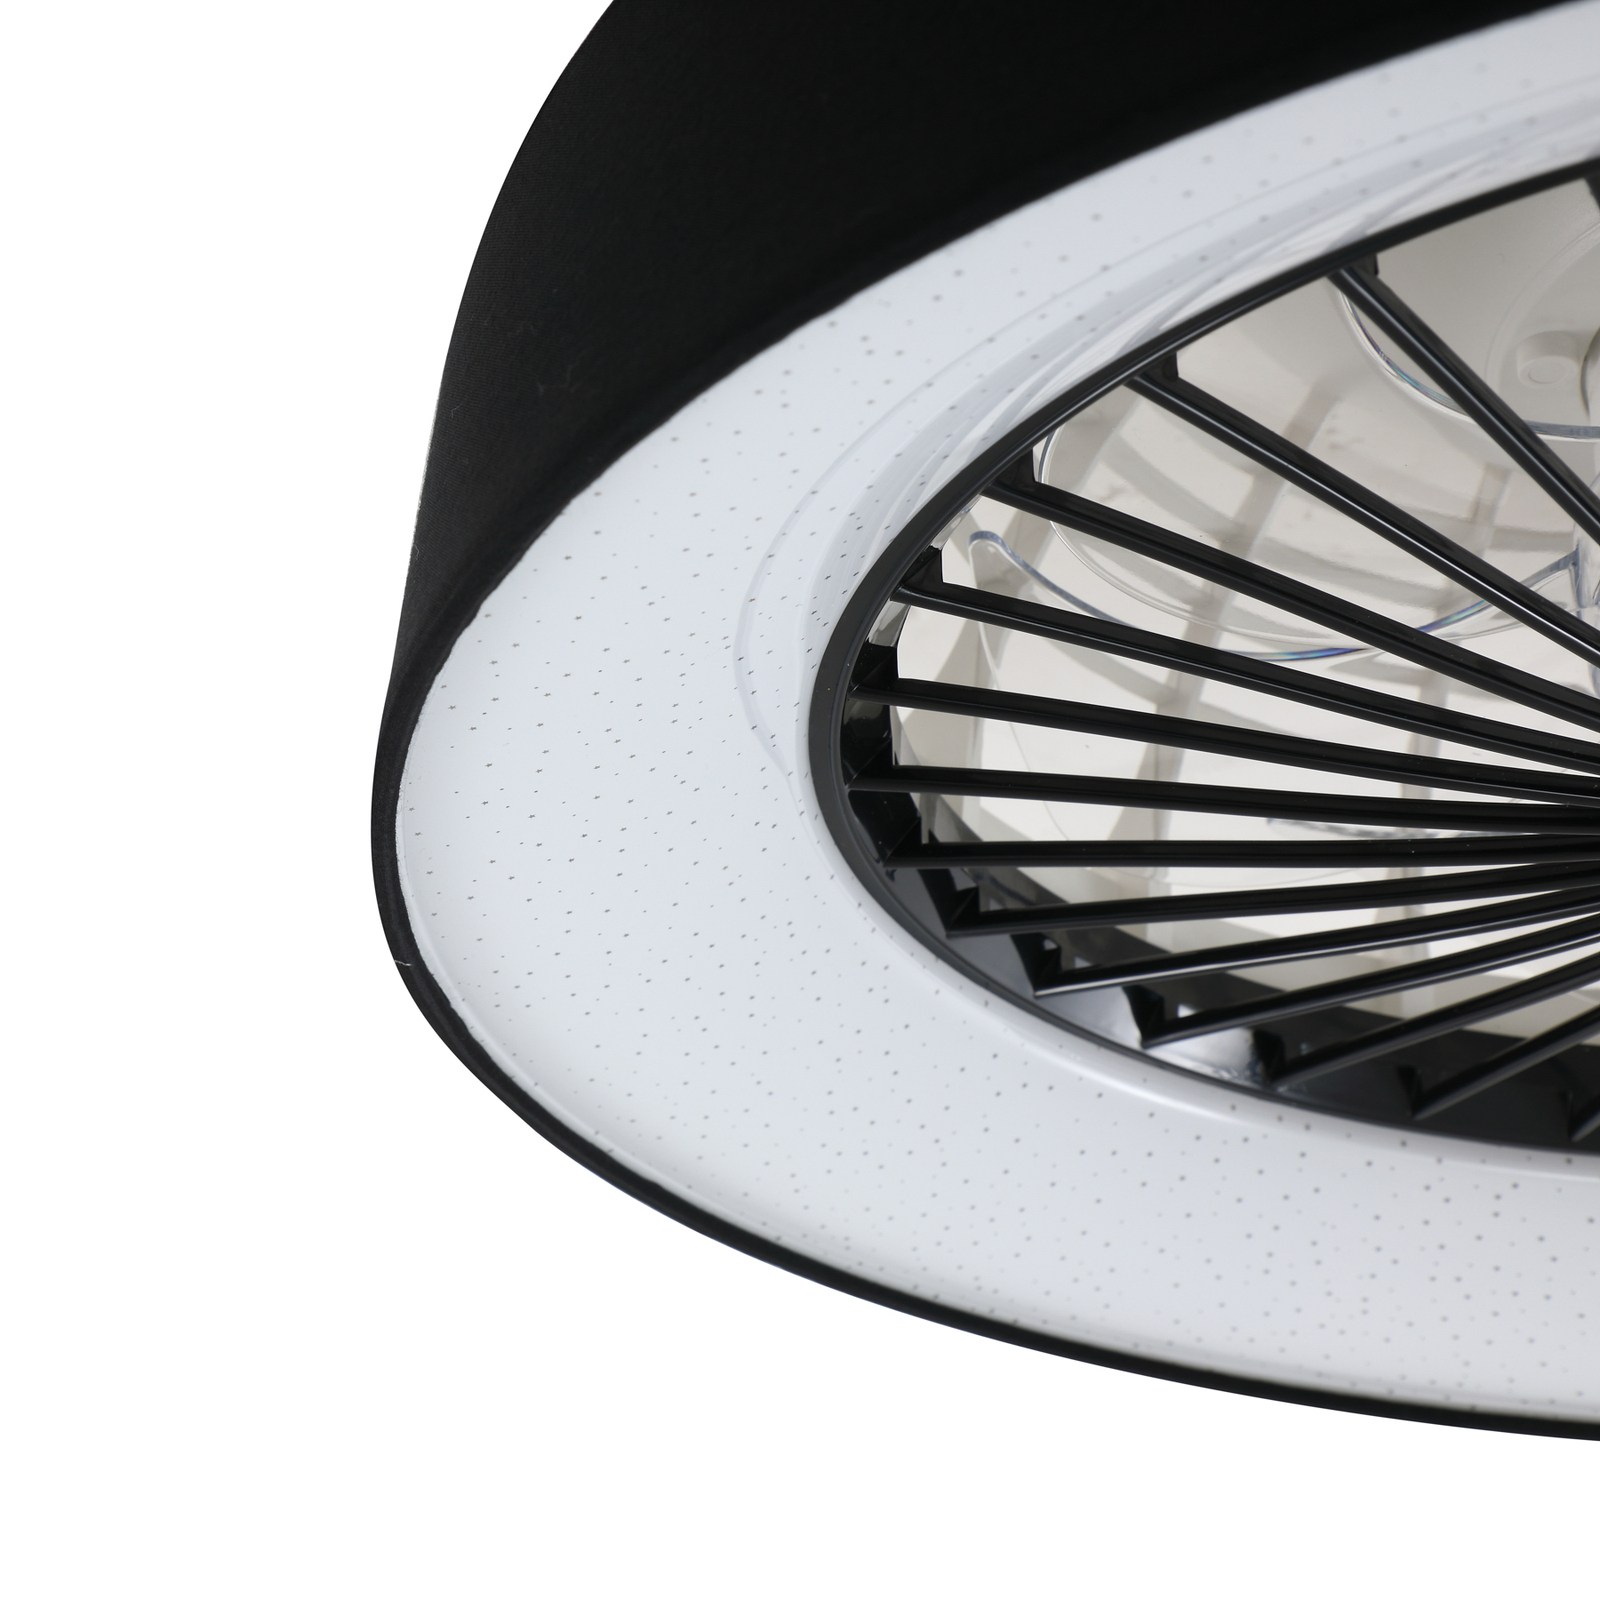 Wentylator sufitowy LED Mace, czarny, cichy, Ø 47 cm